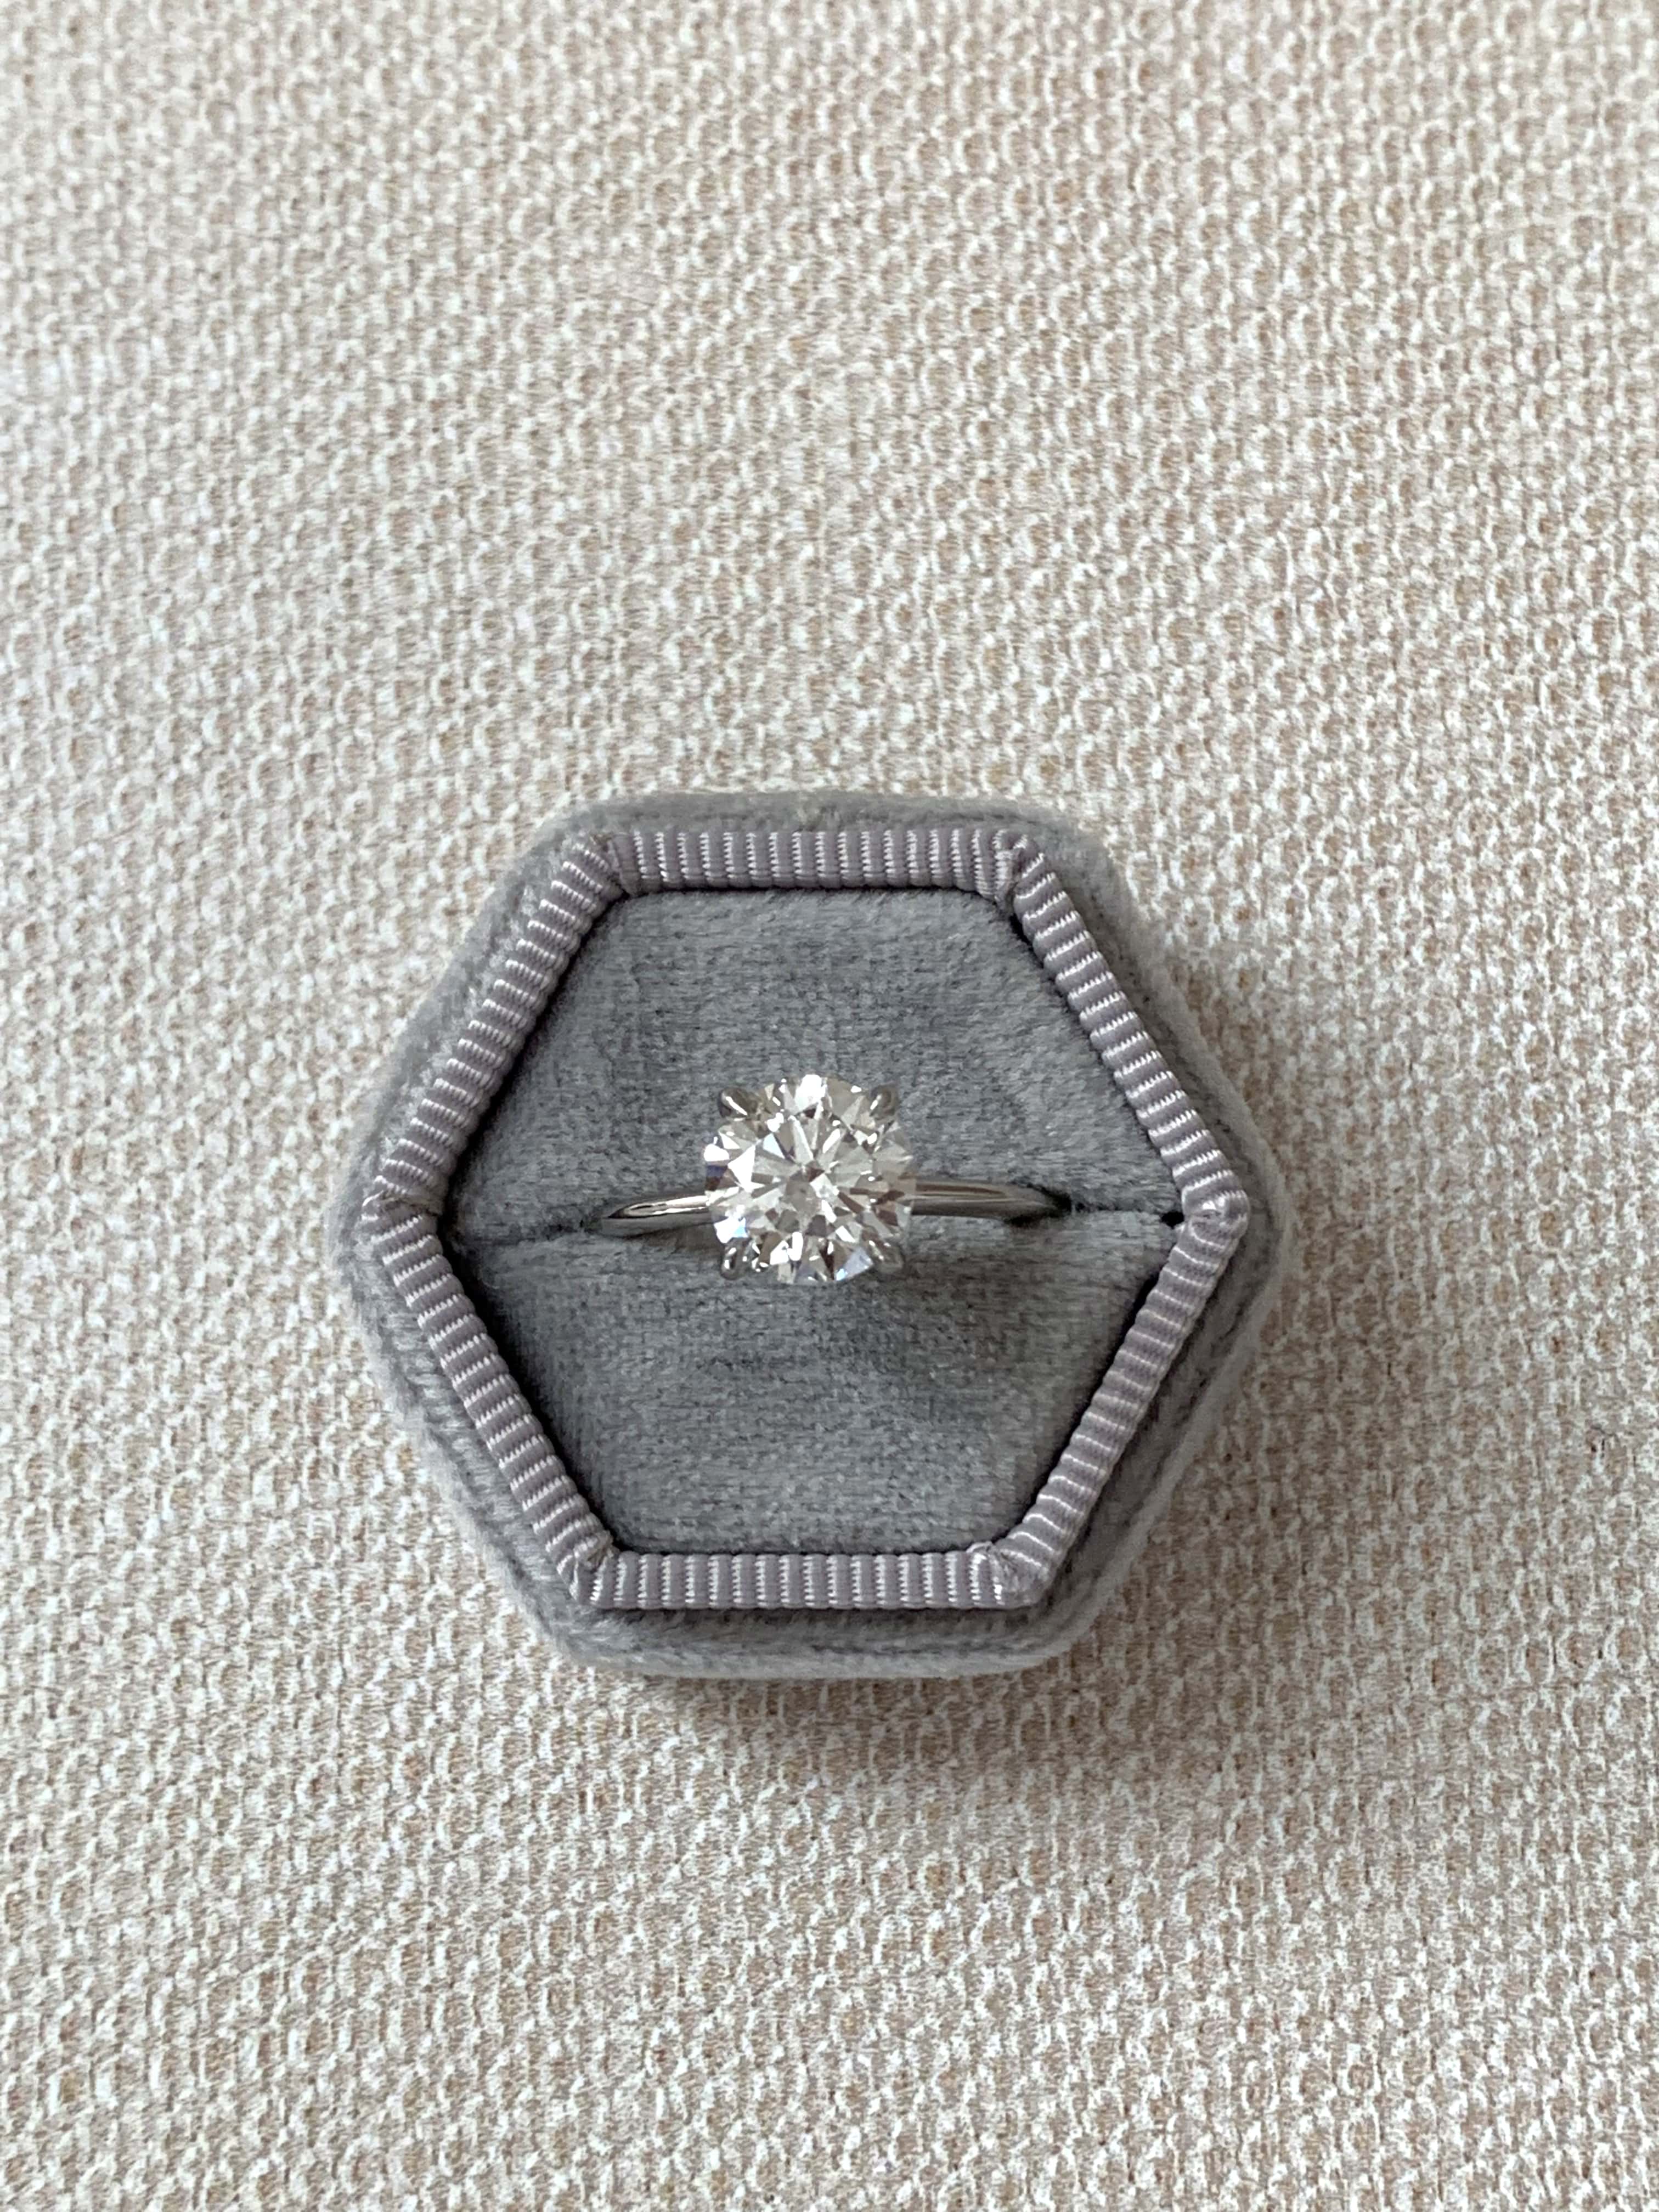 Custom Round Diamond Engagement Ring